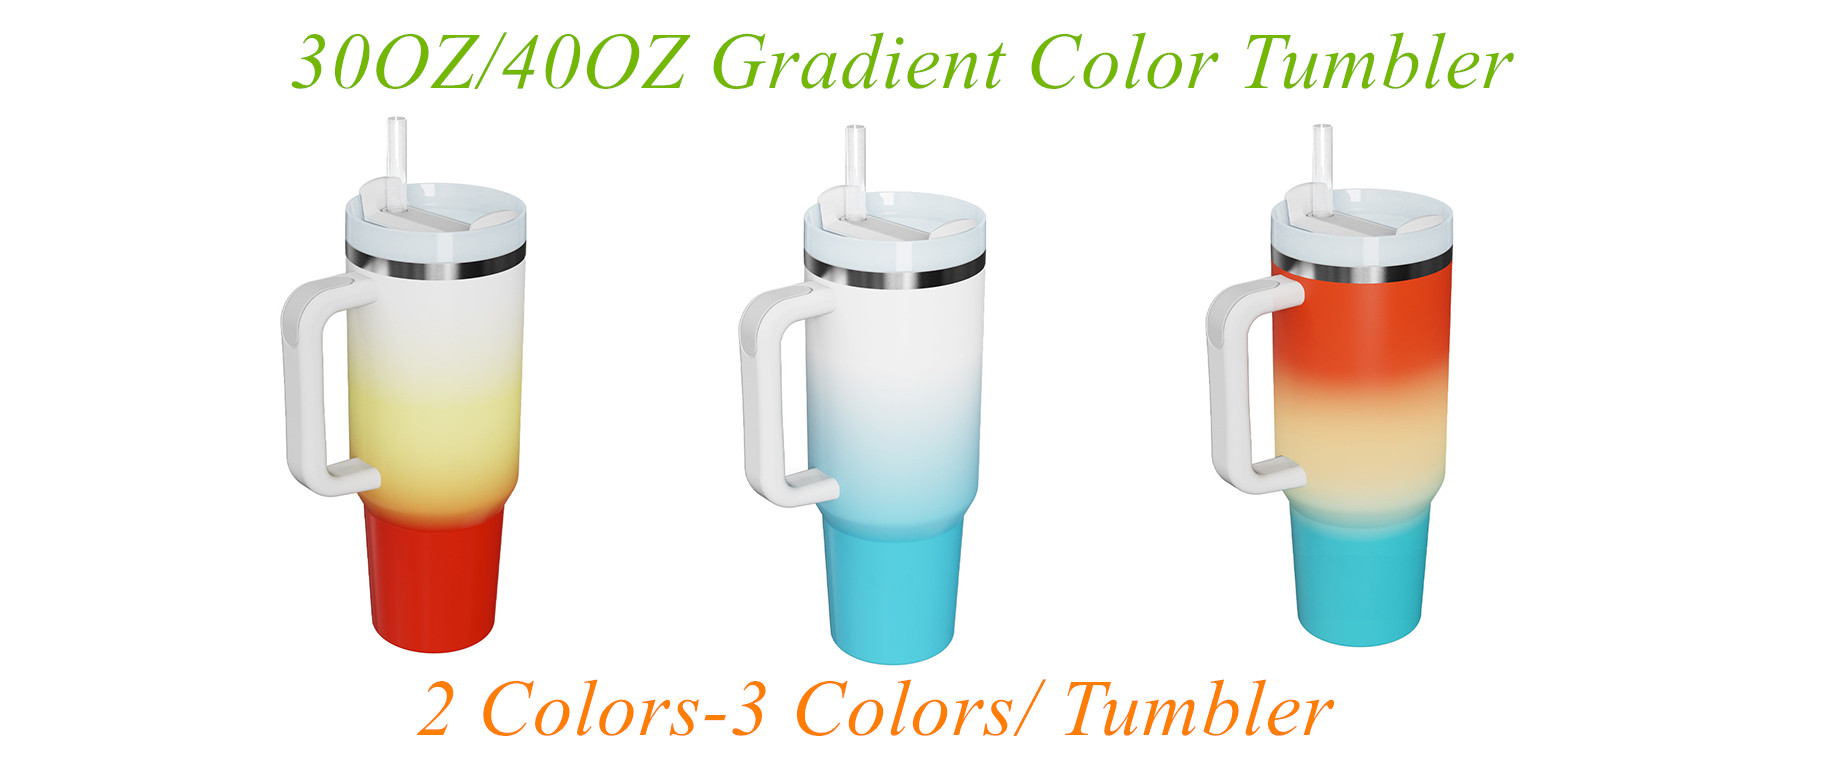 Vaso de 30OZ y 40OZ con diseño de color degradado